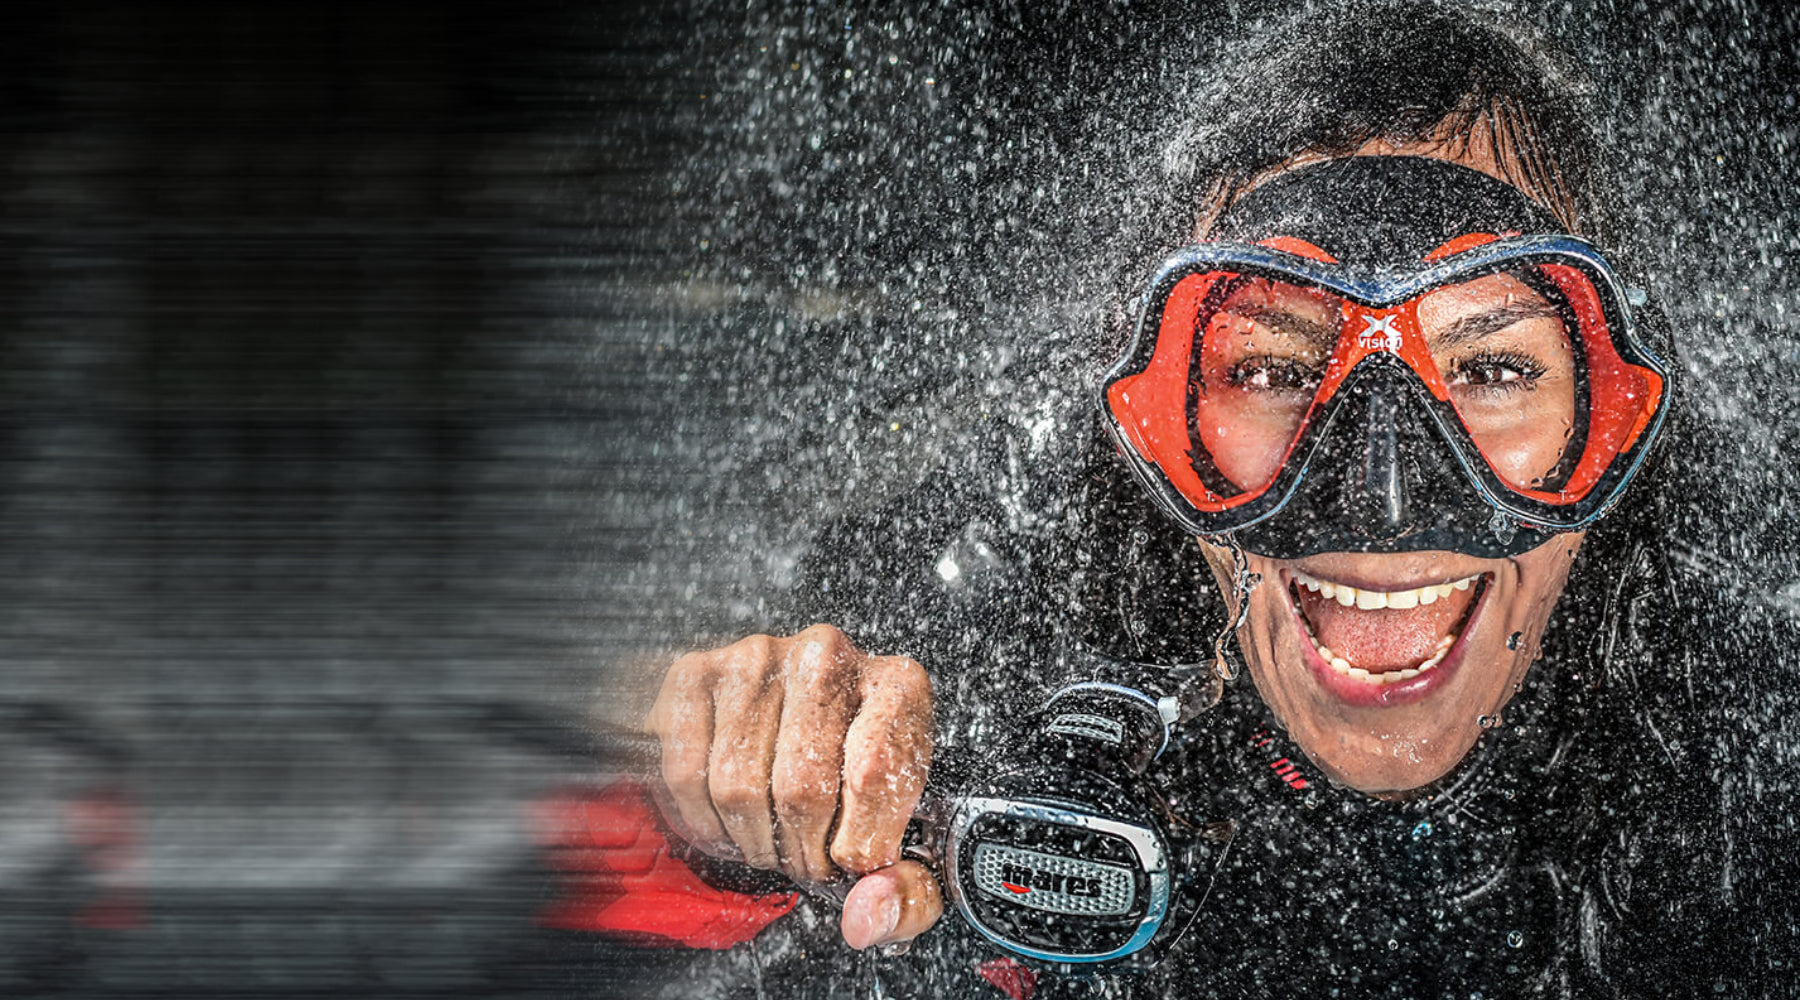 DiveCampus Premium Scuba Diving Experiences in Dubai and around UAE! — divecampus